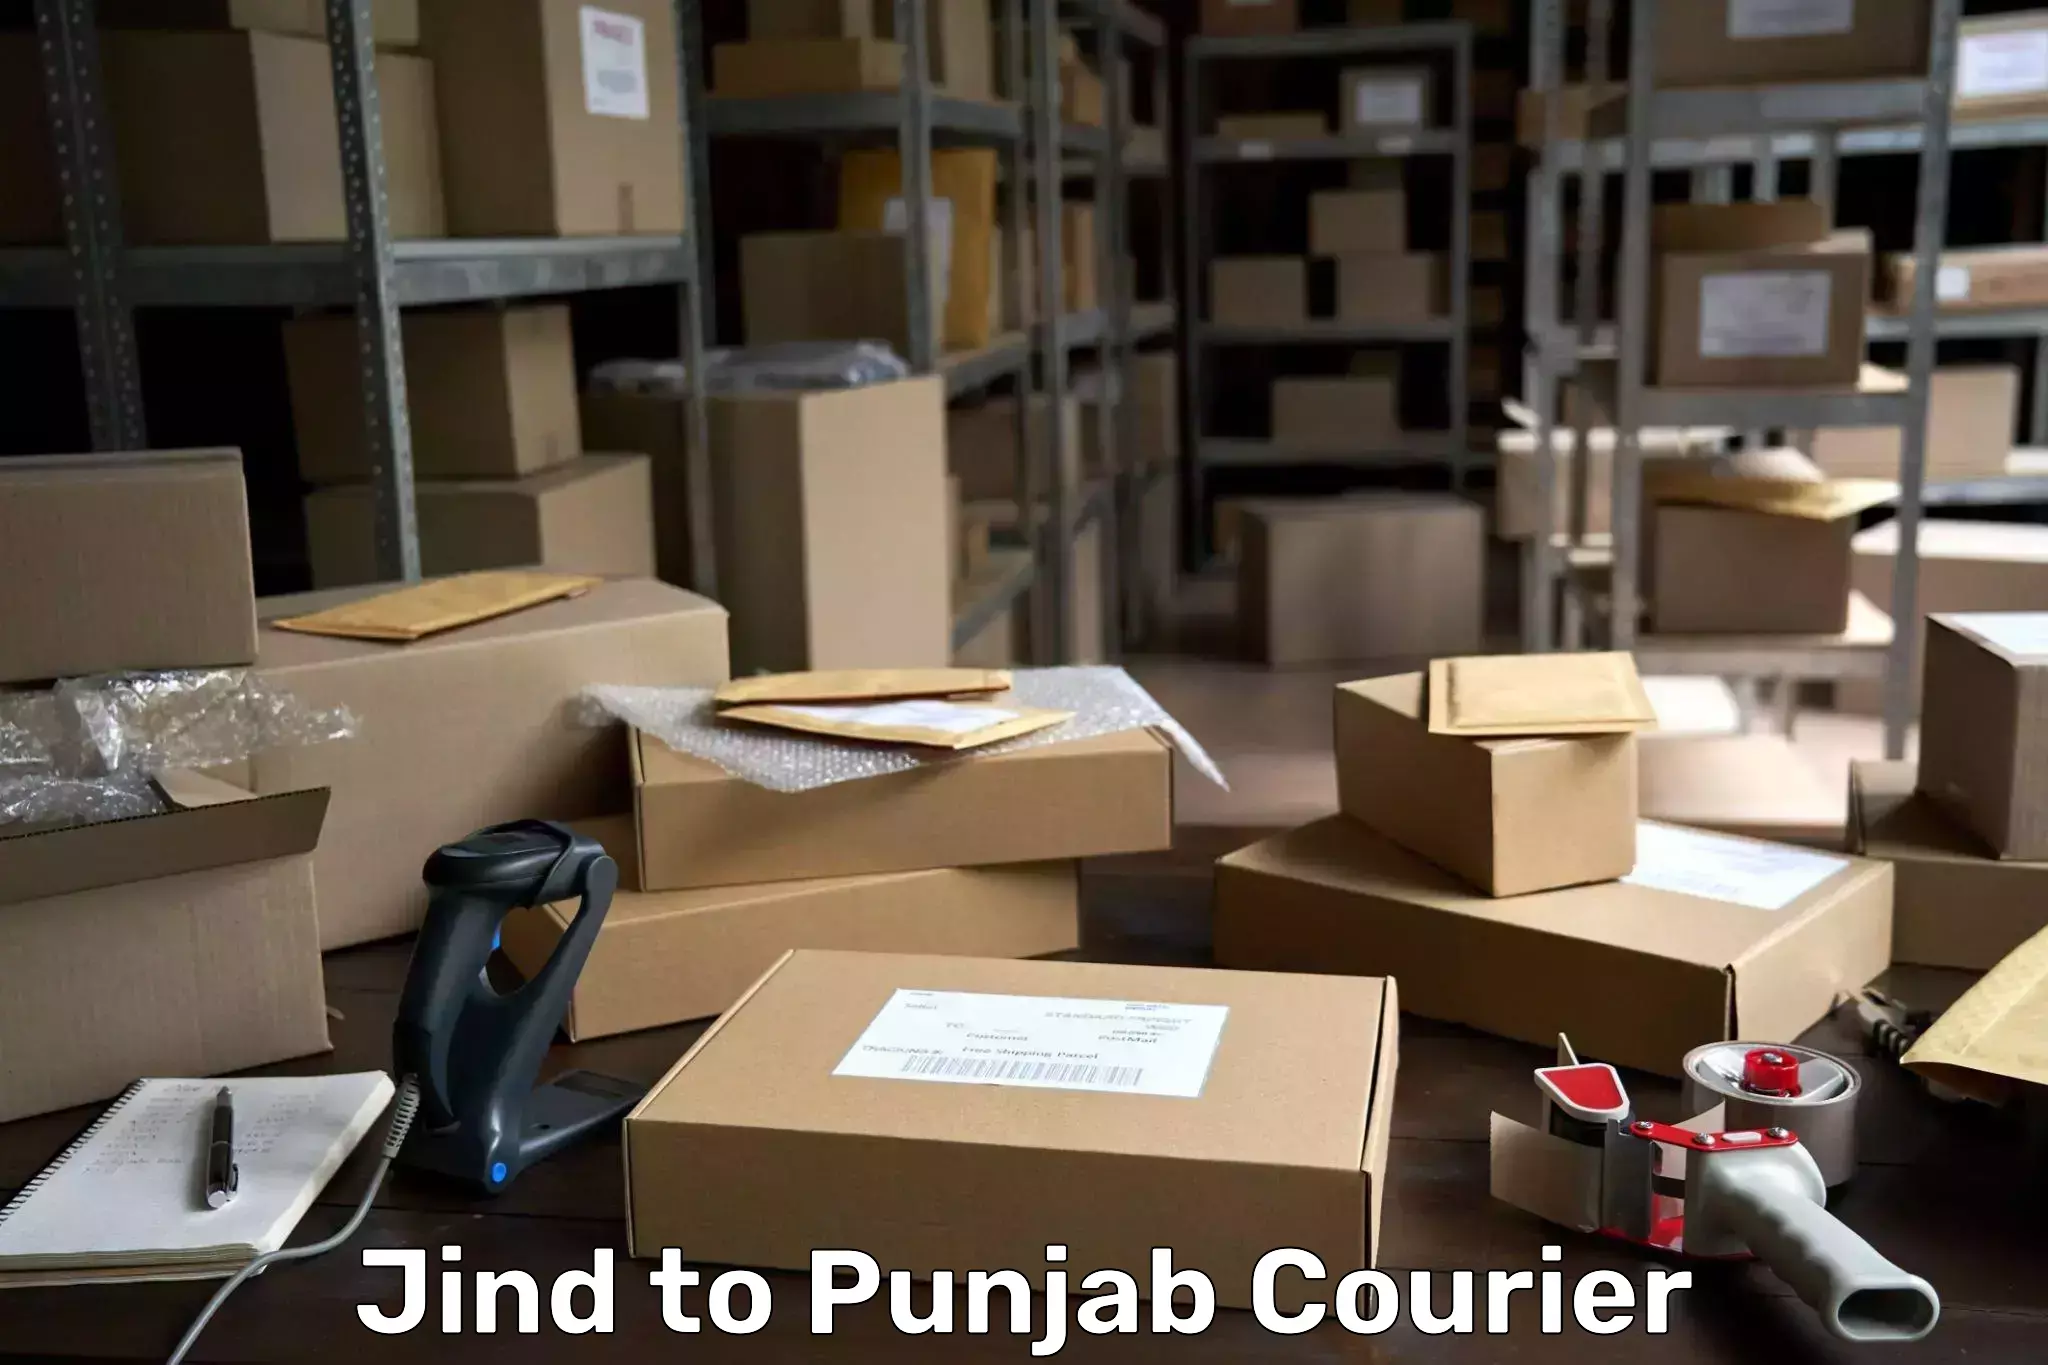 Regular parcel service Jind to Punjab